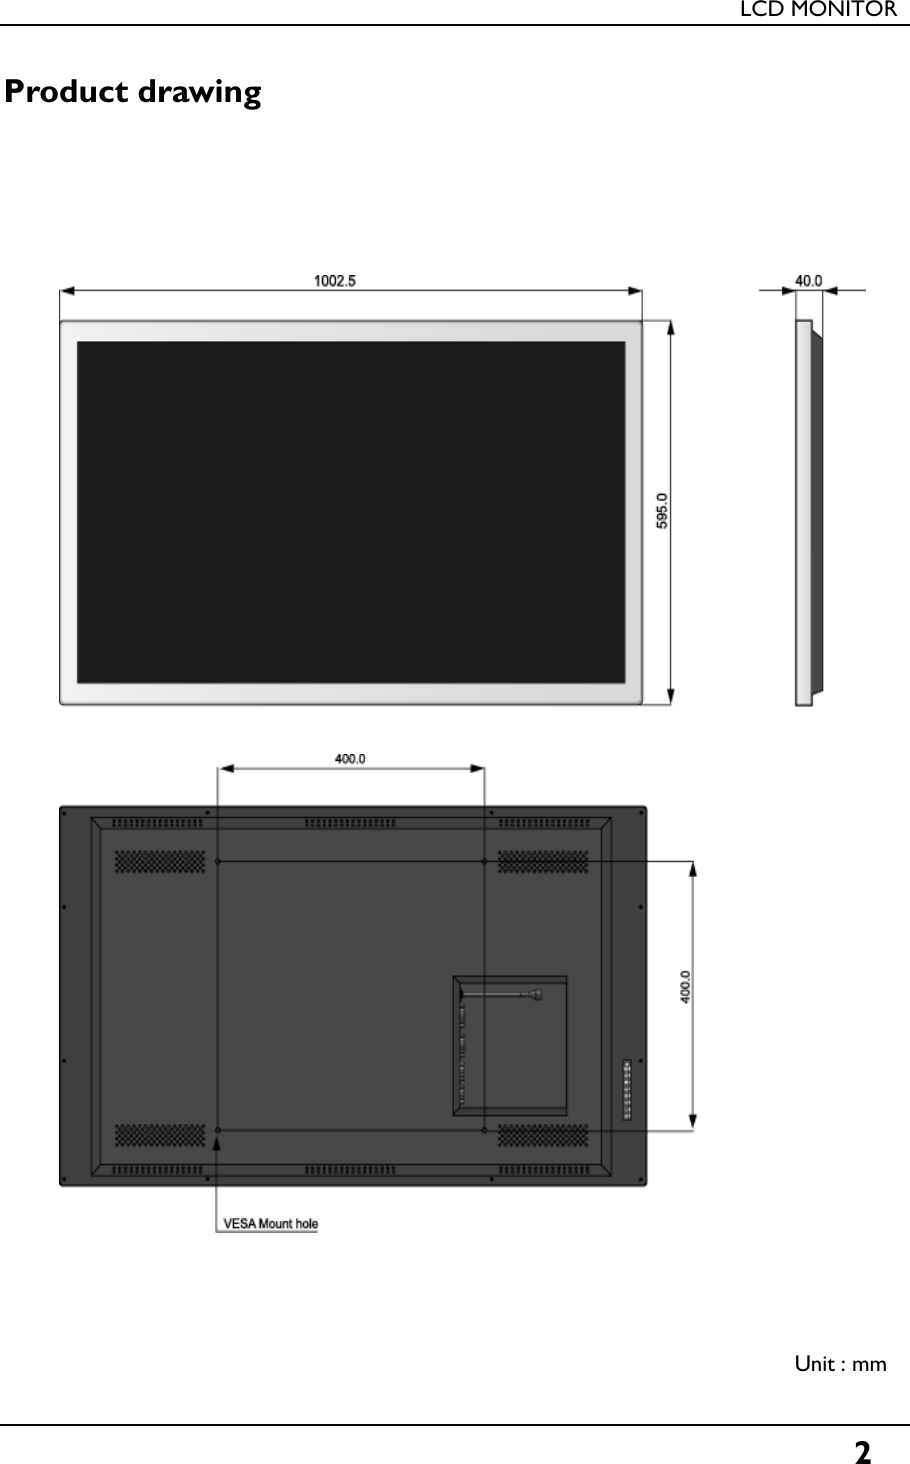 LCD MONITORProduct drawinggUnit : mm2